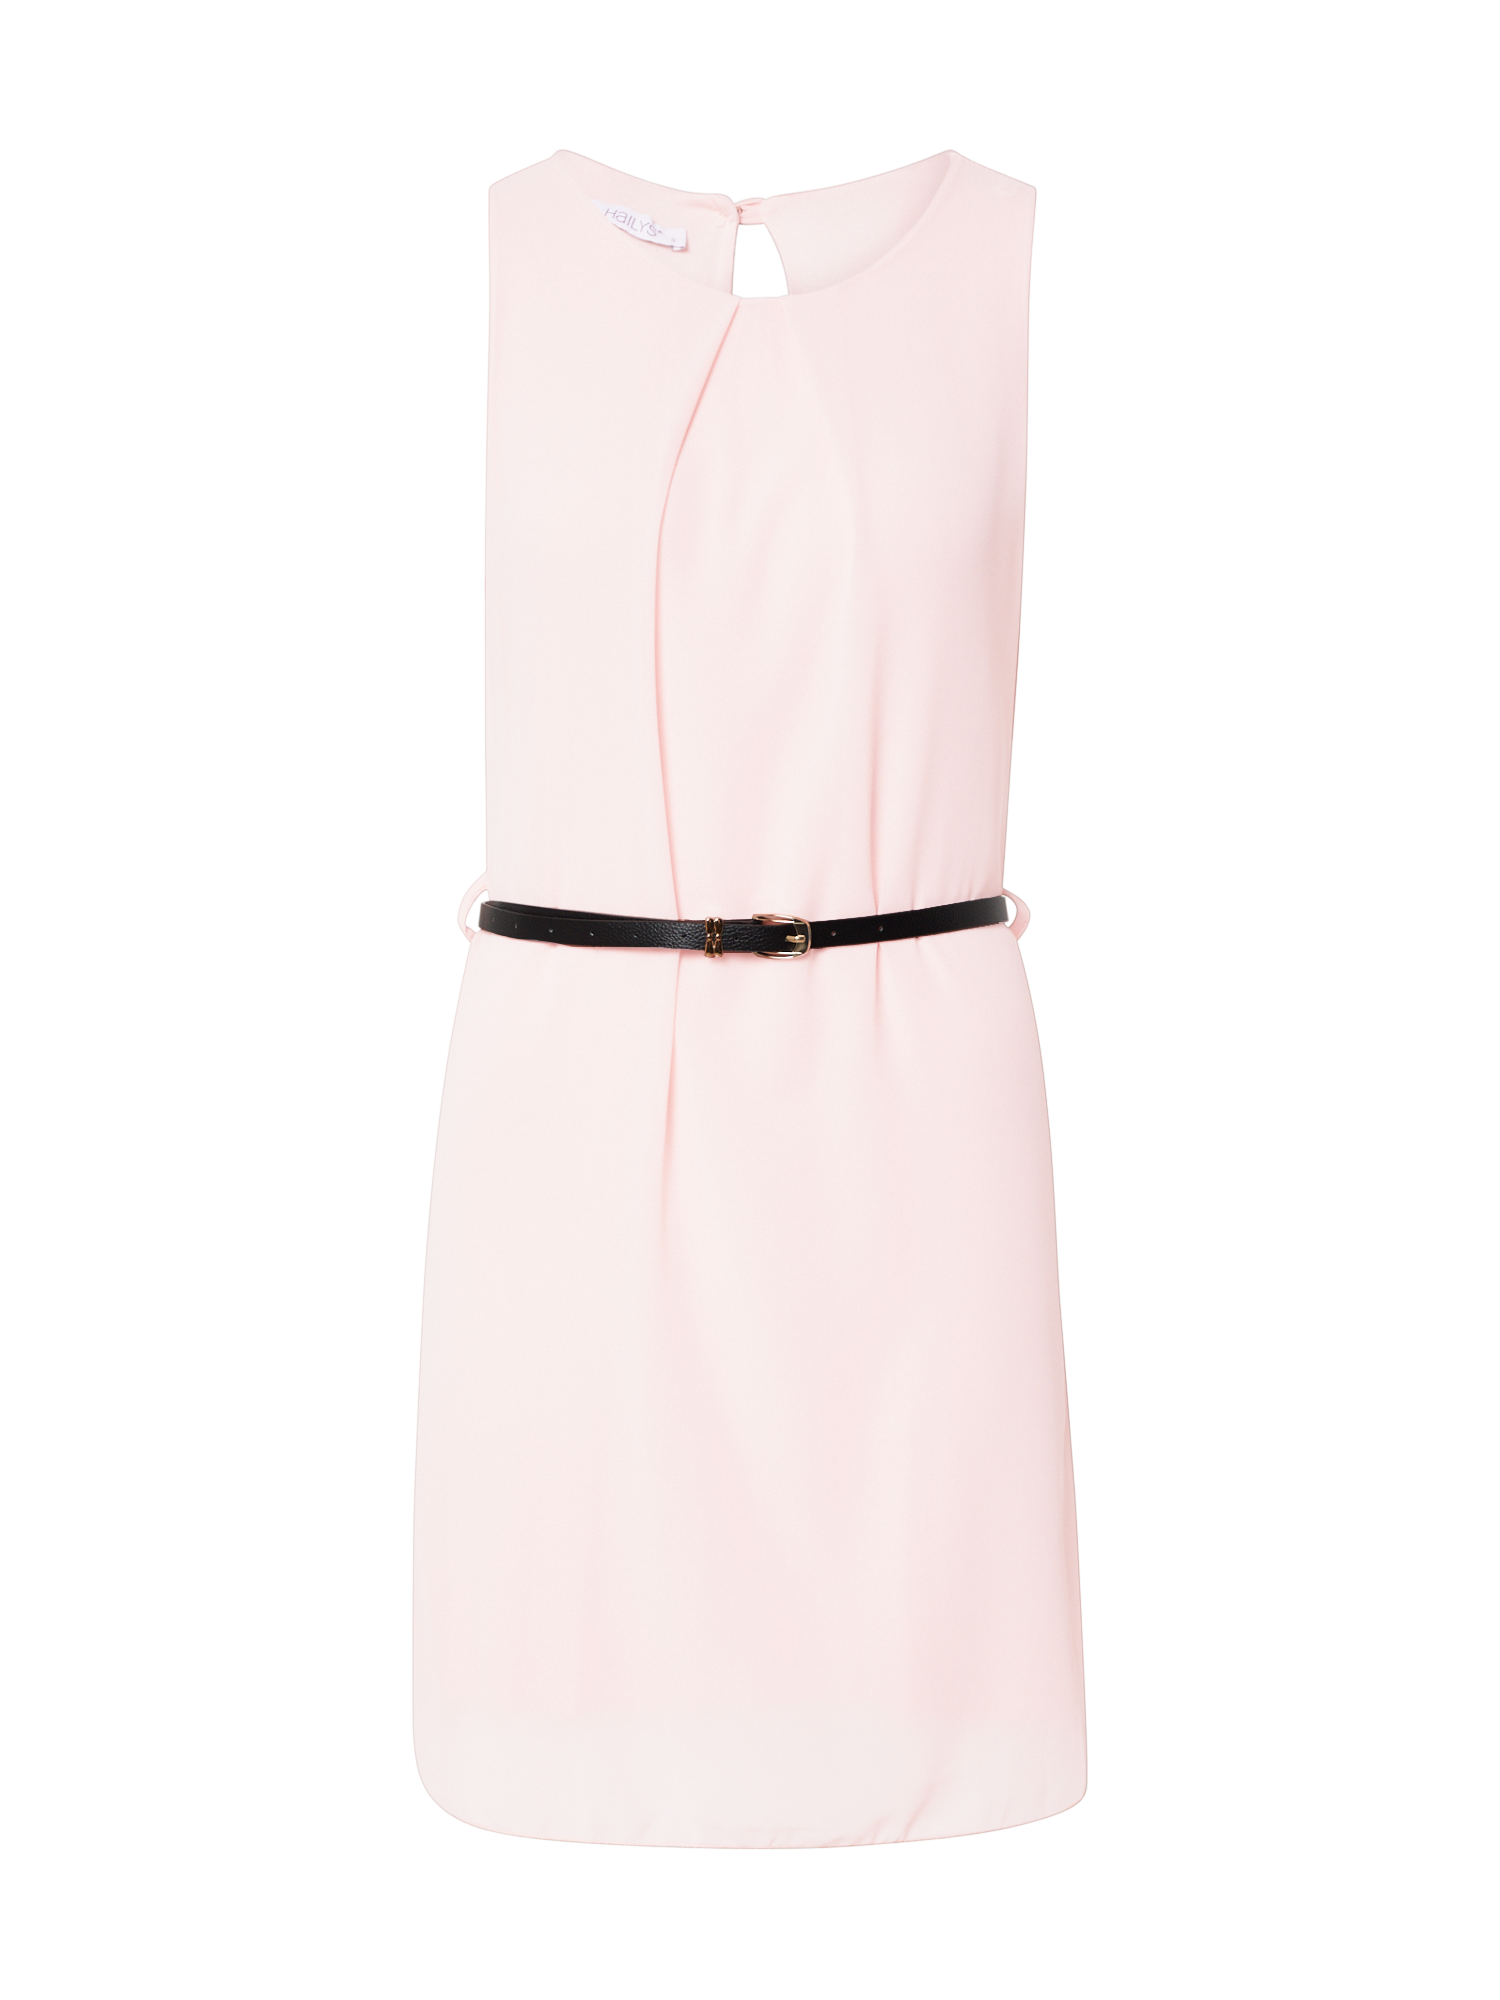 Odzież Kobiety Hailys Sukienka Tanja w kolorze Różowym 